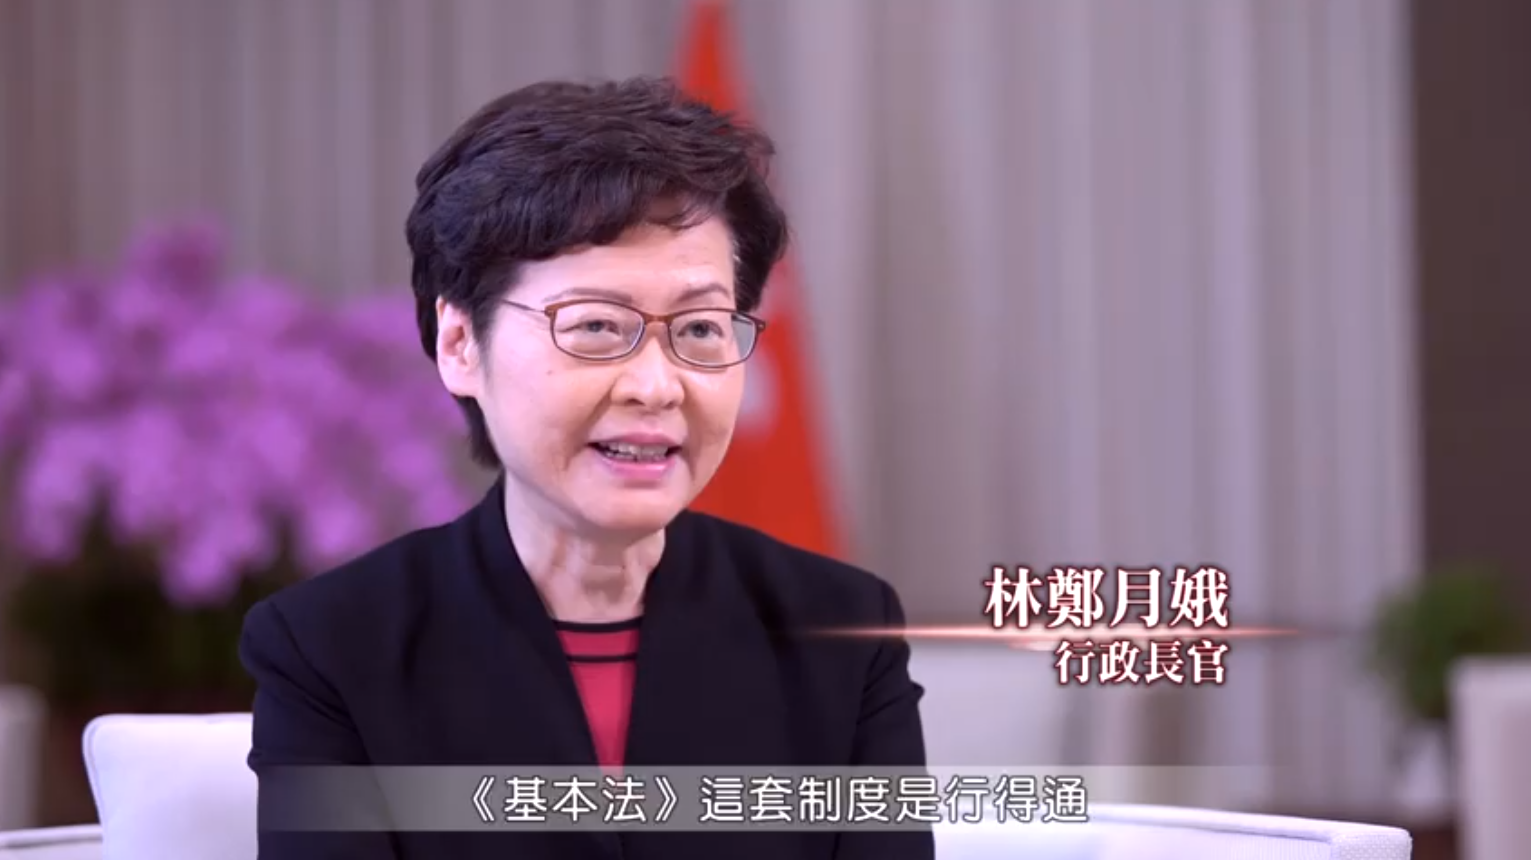 林鄭月娥在片中表示Am基本法n是一套行得通的制度A可令香港人有良好生活C]政制及內地事務局FB截圖^